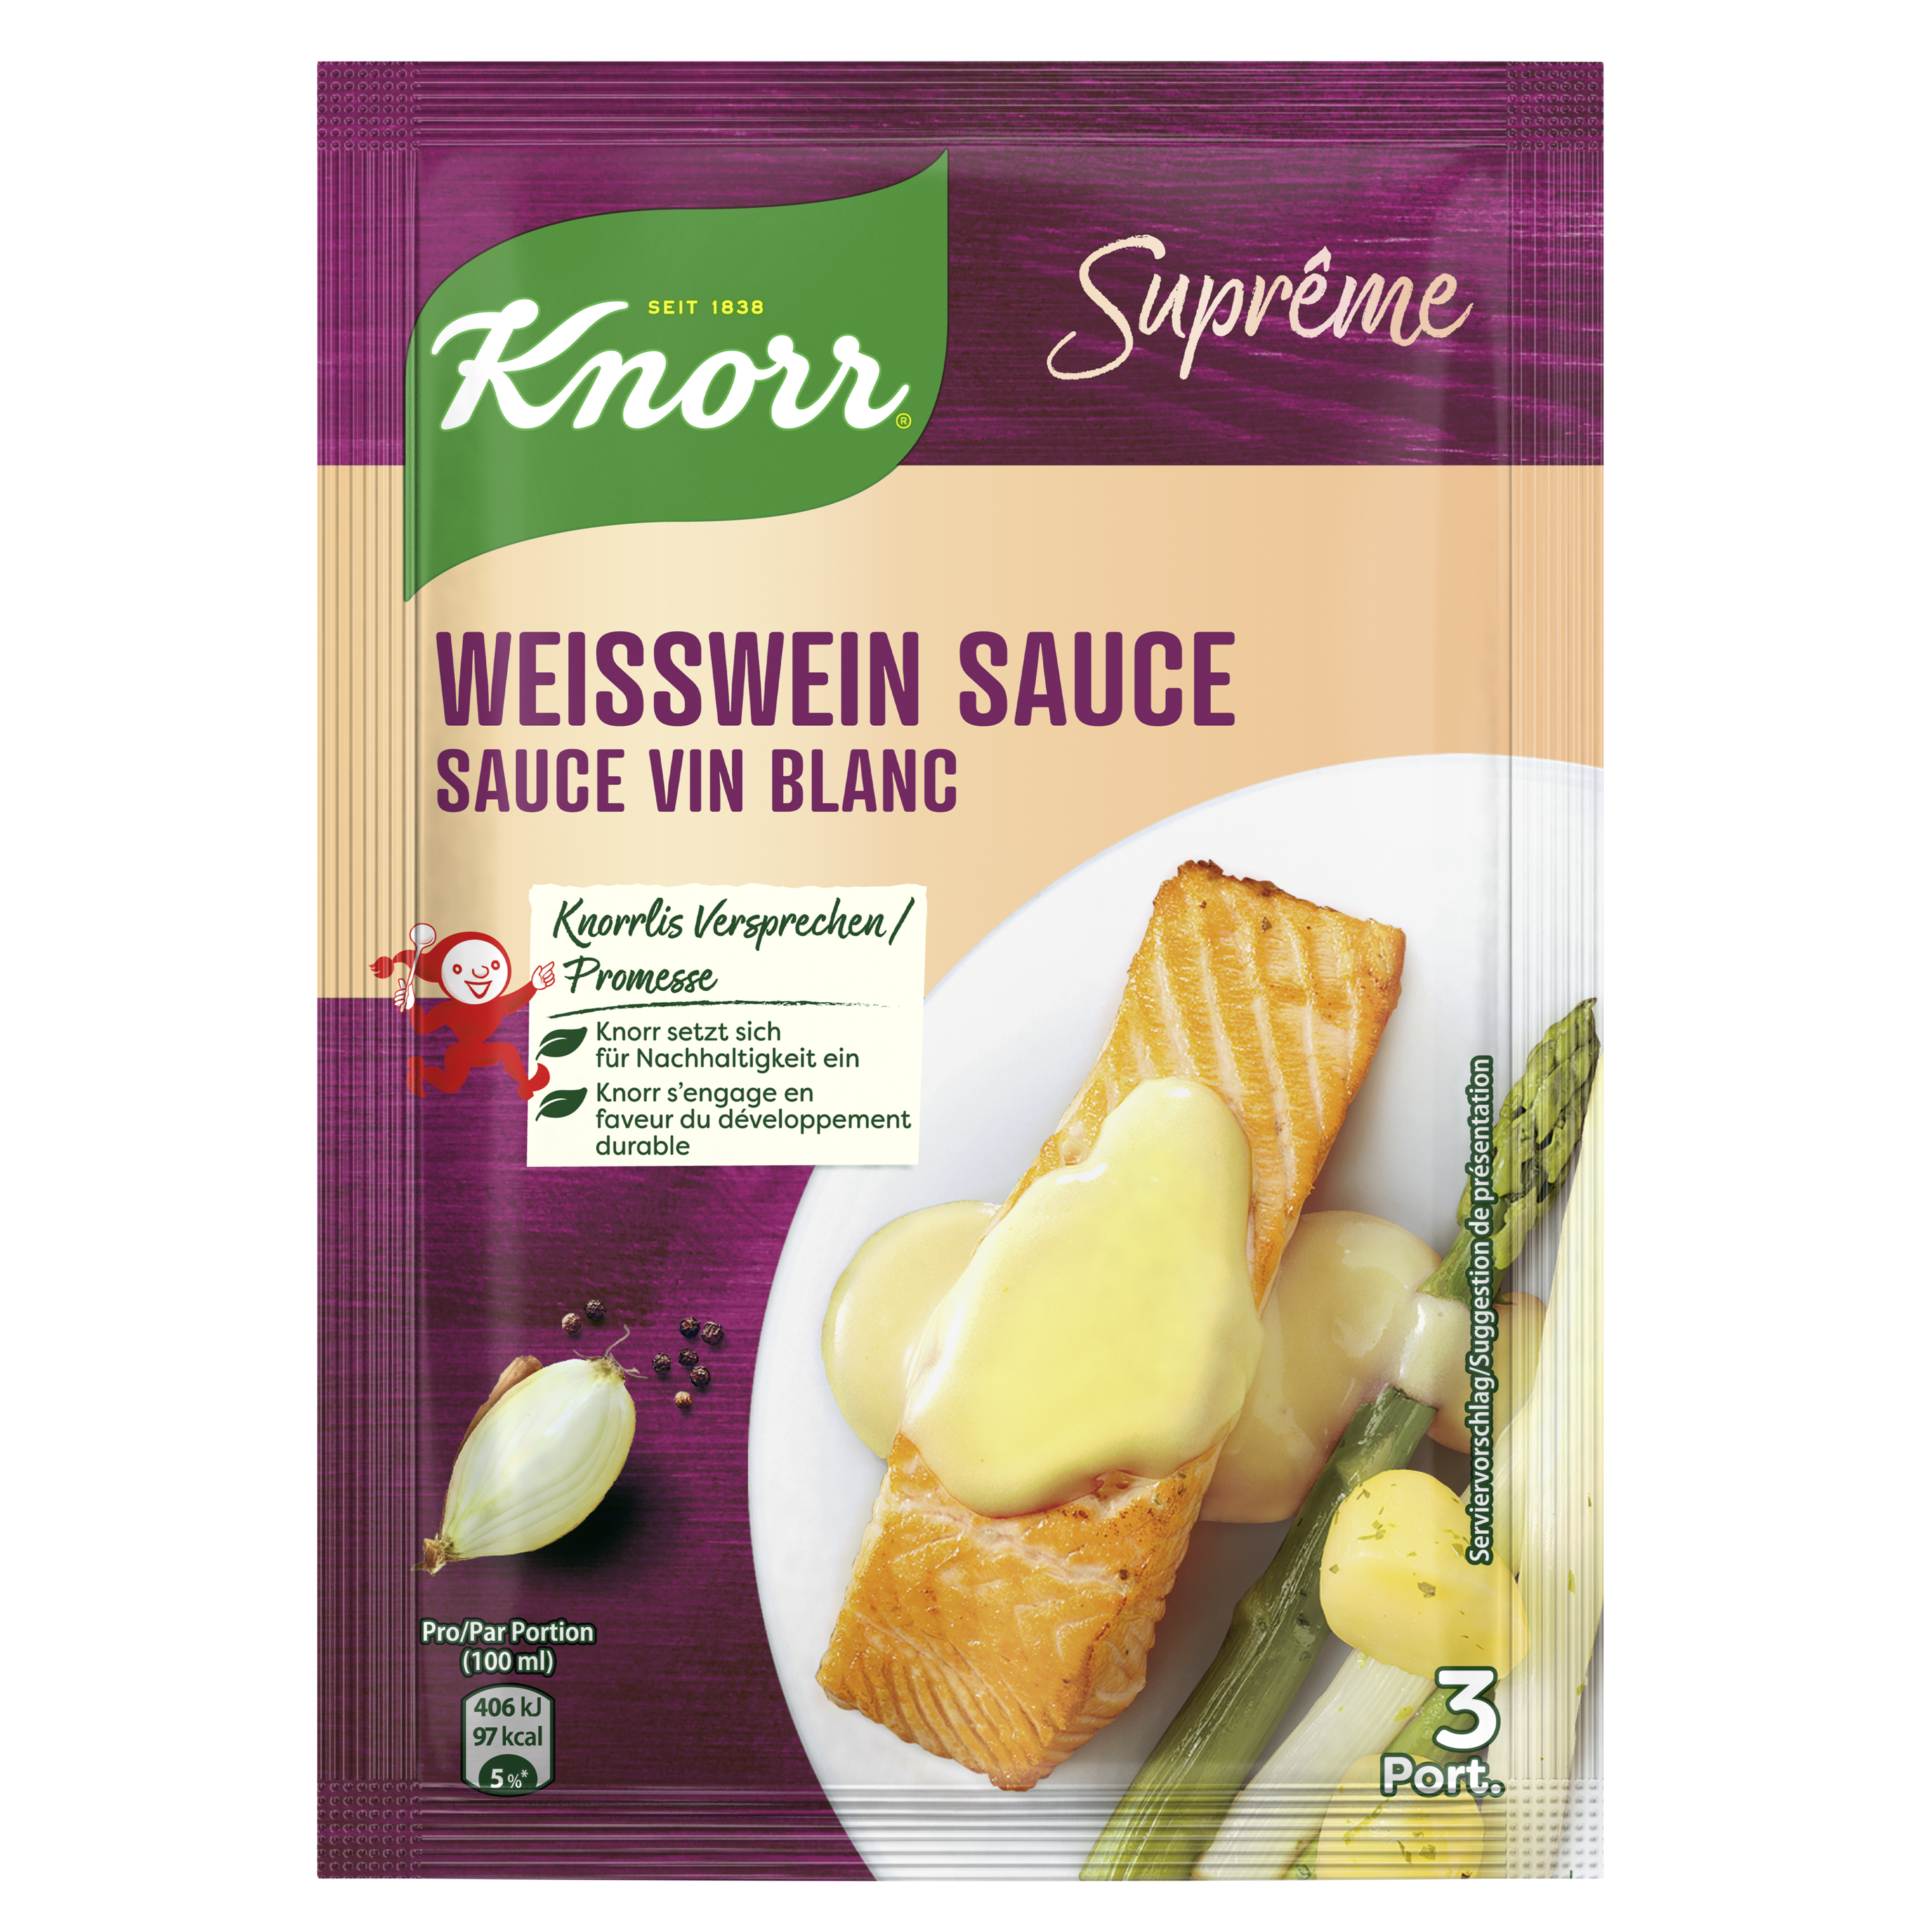 KNORR Suprême Weisswein Sauce Beutel 3 Portionen